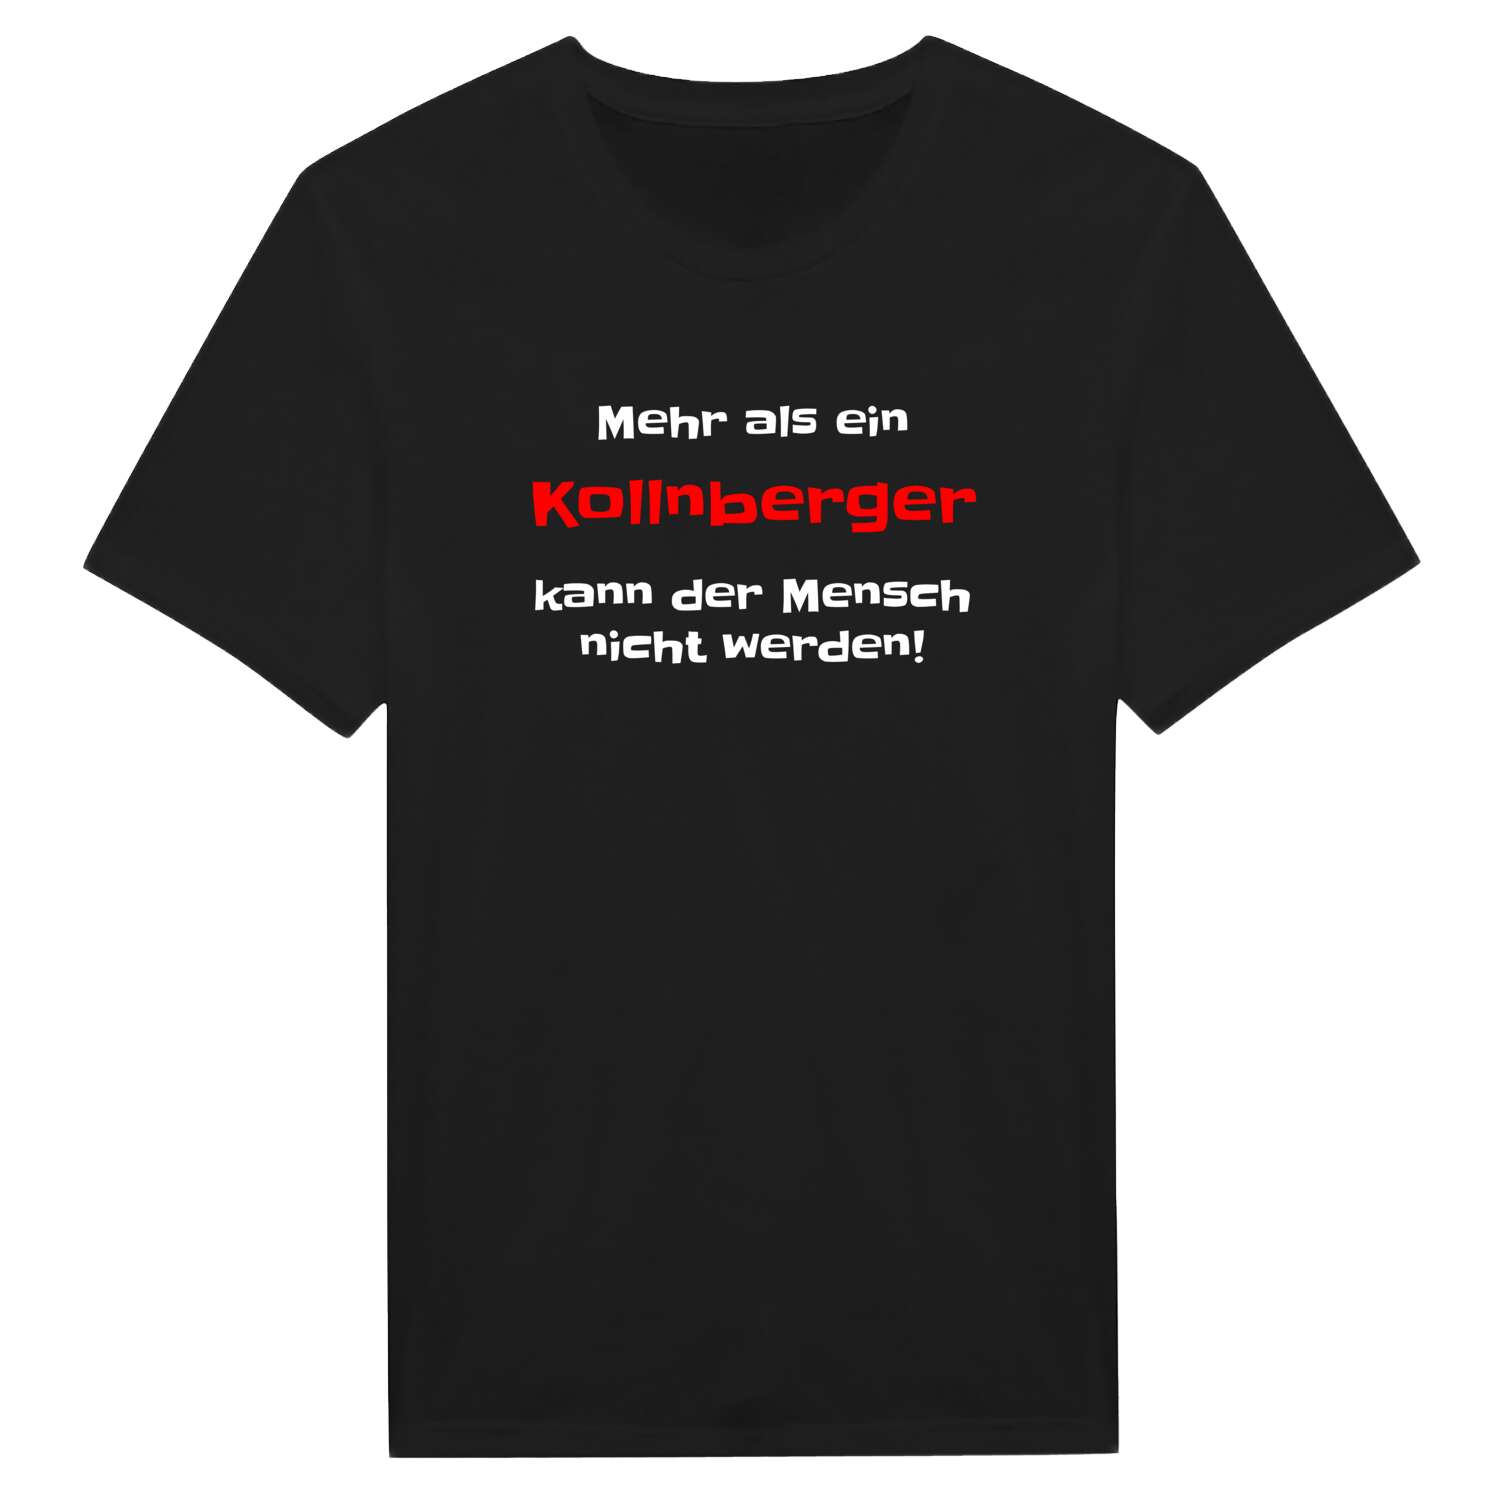 Kollnberg T-Shirt »Mehr als ein«